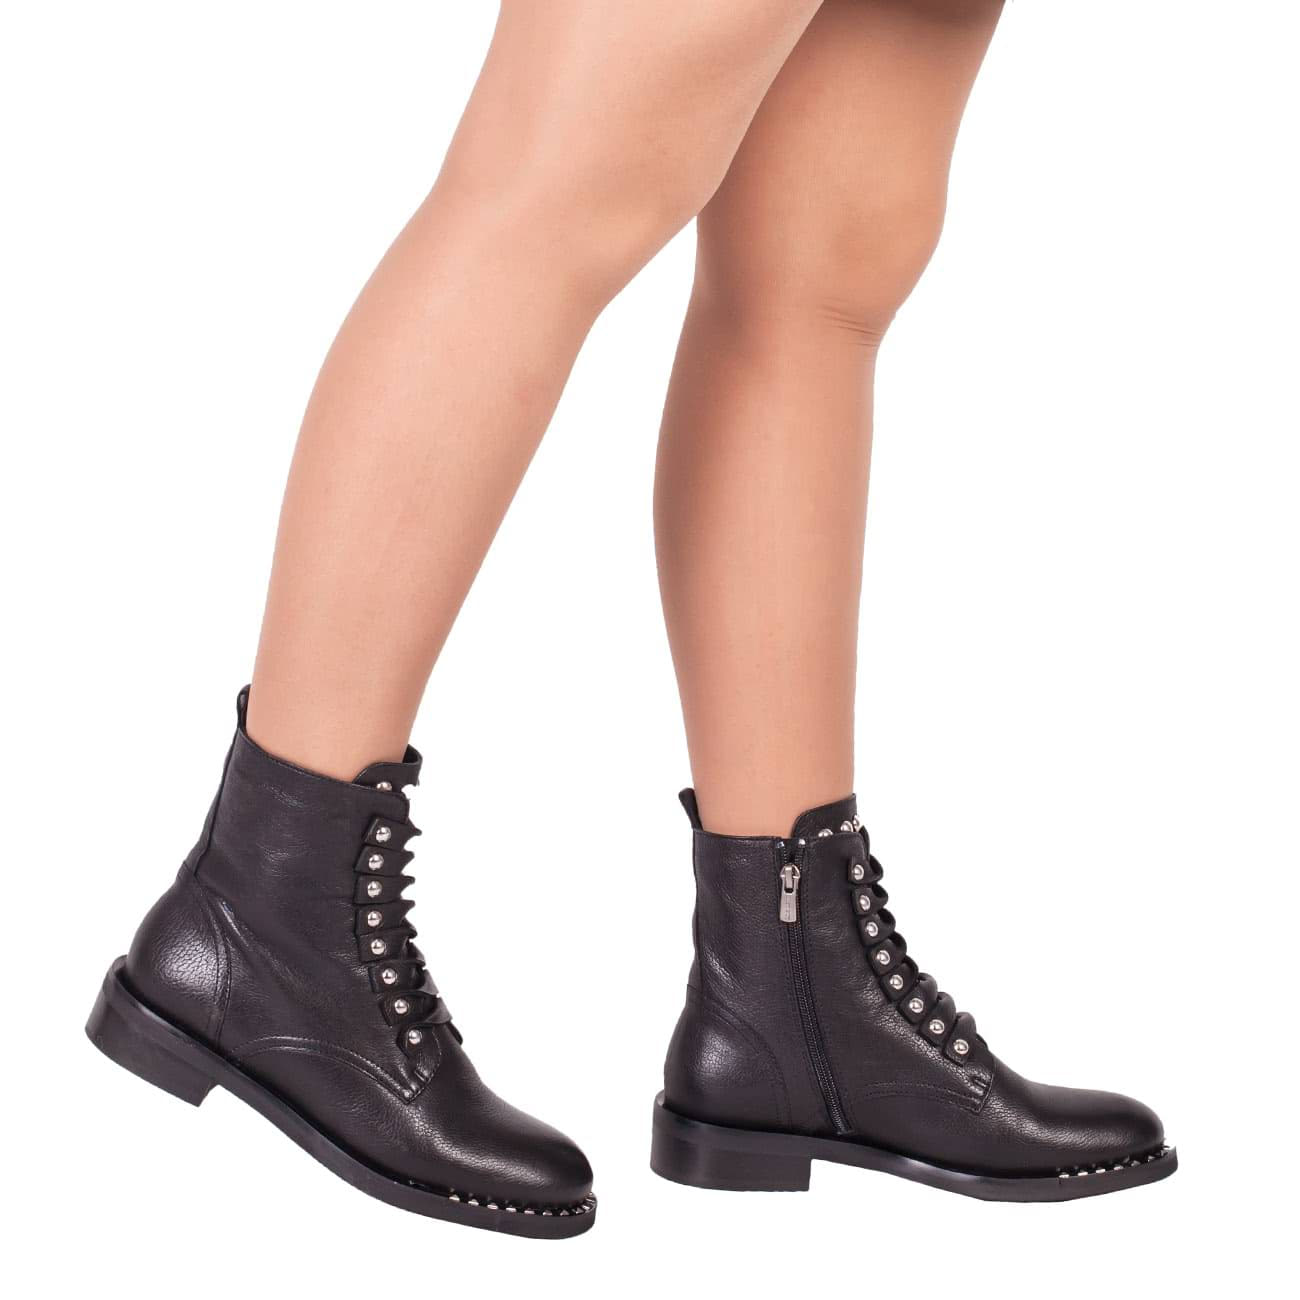 Озон обувь женская кожаная. Ботинки Jana 25308-25-001. Валберис ботинки на толстой подошве. Женские ботинки осень 2020 вайлдберриз. Валберис обувь женская ботинки.